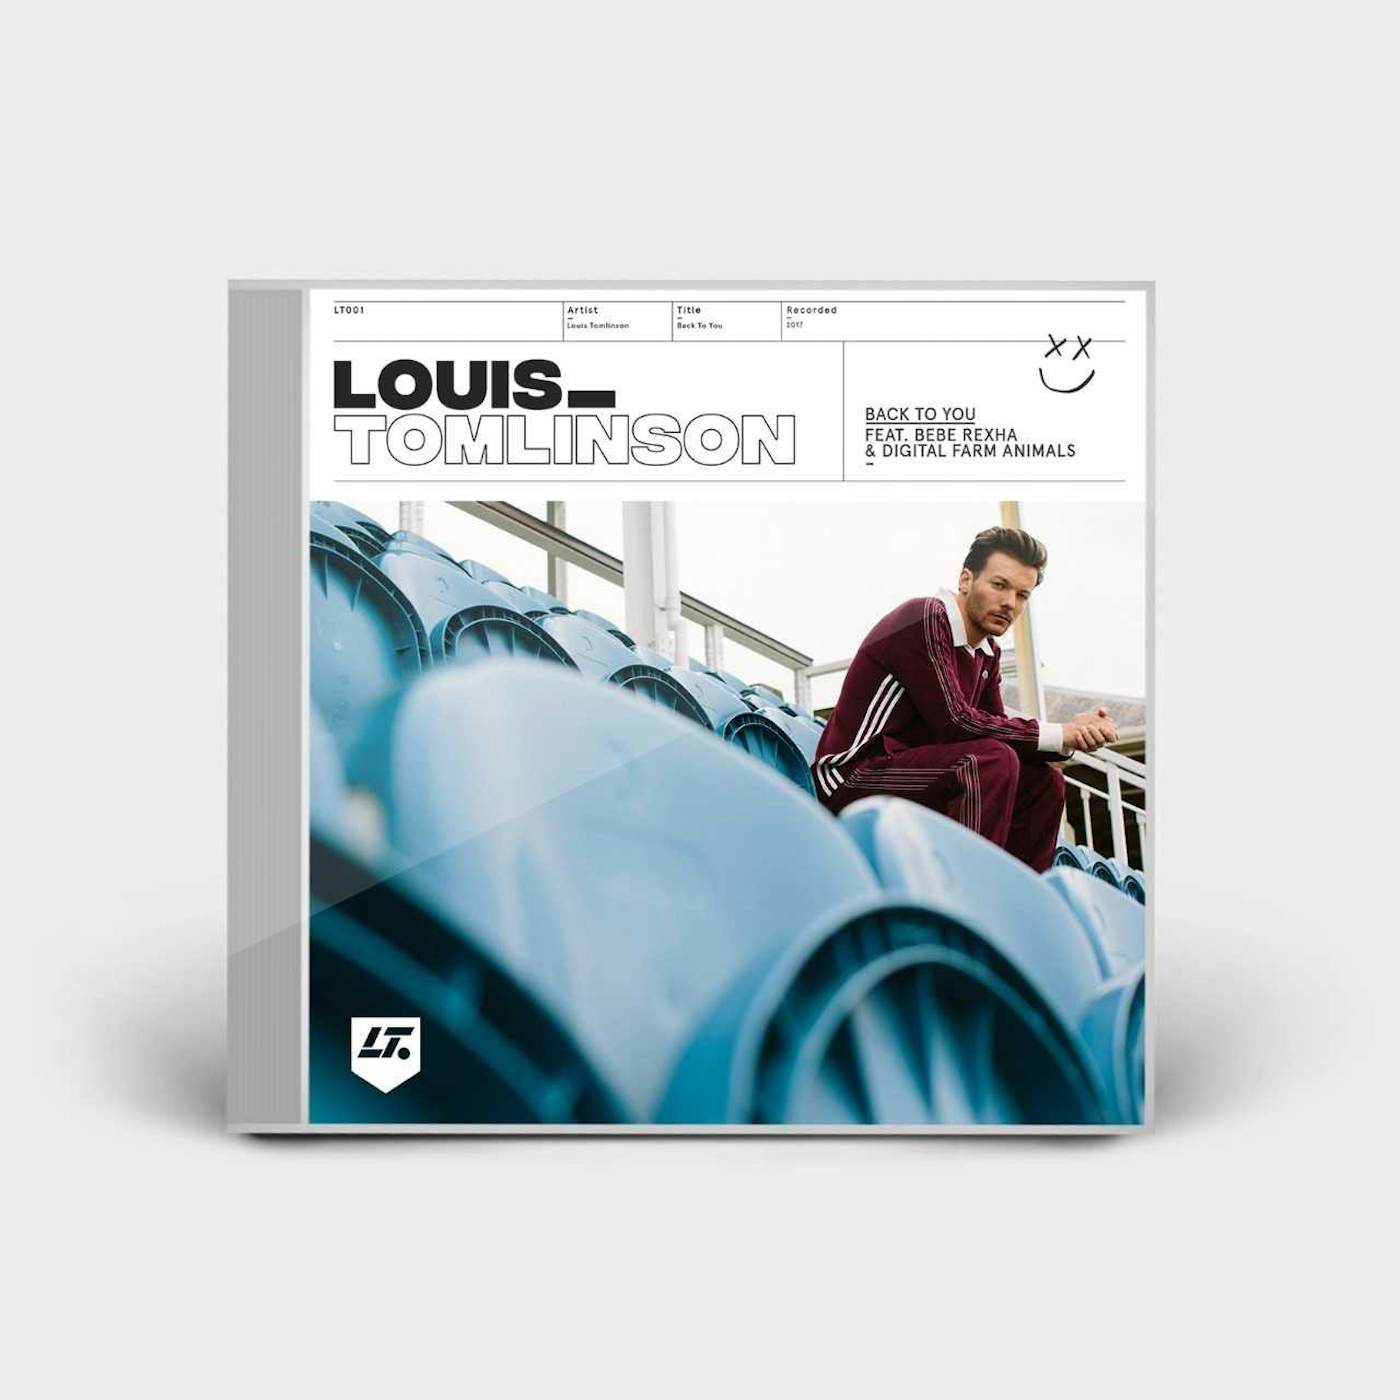 LOUIS TOMLINSON — shop.louis-tomlinson.com